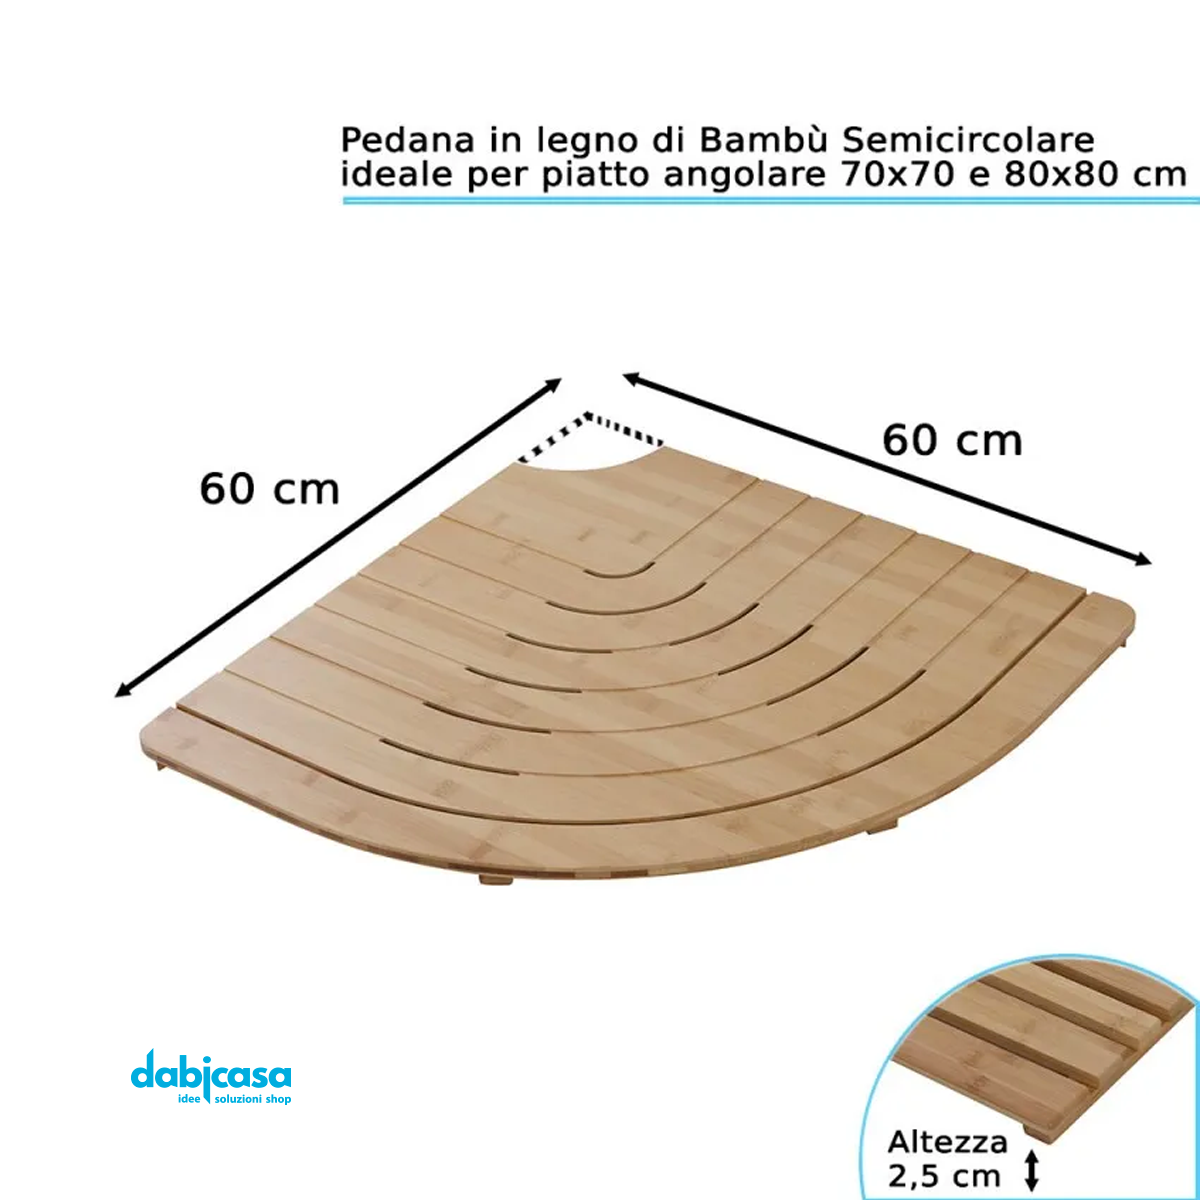 Pedana Doccia in Legno"Bambù" Per Piatto Semicircolare freeshipping - Dabicasa